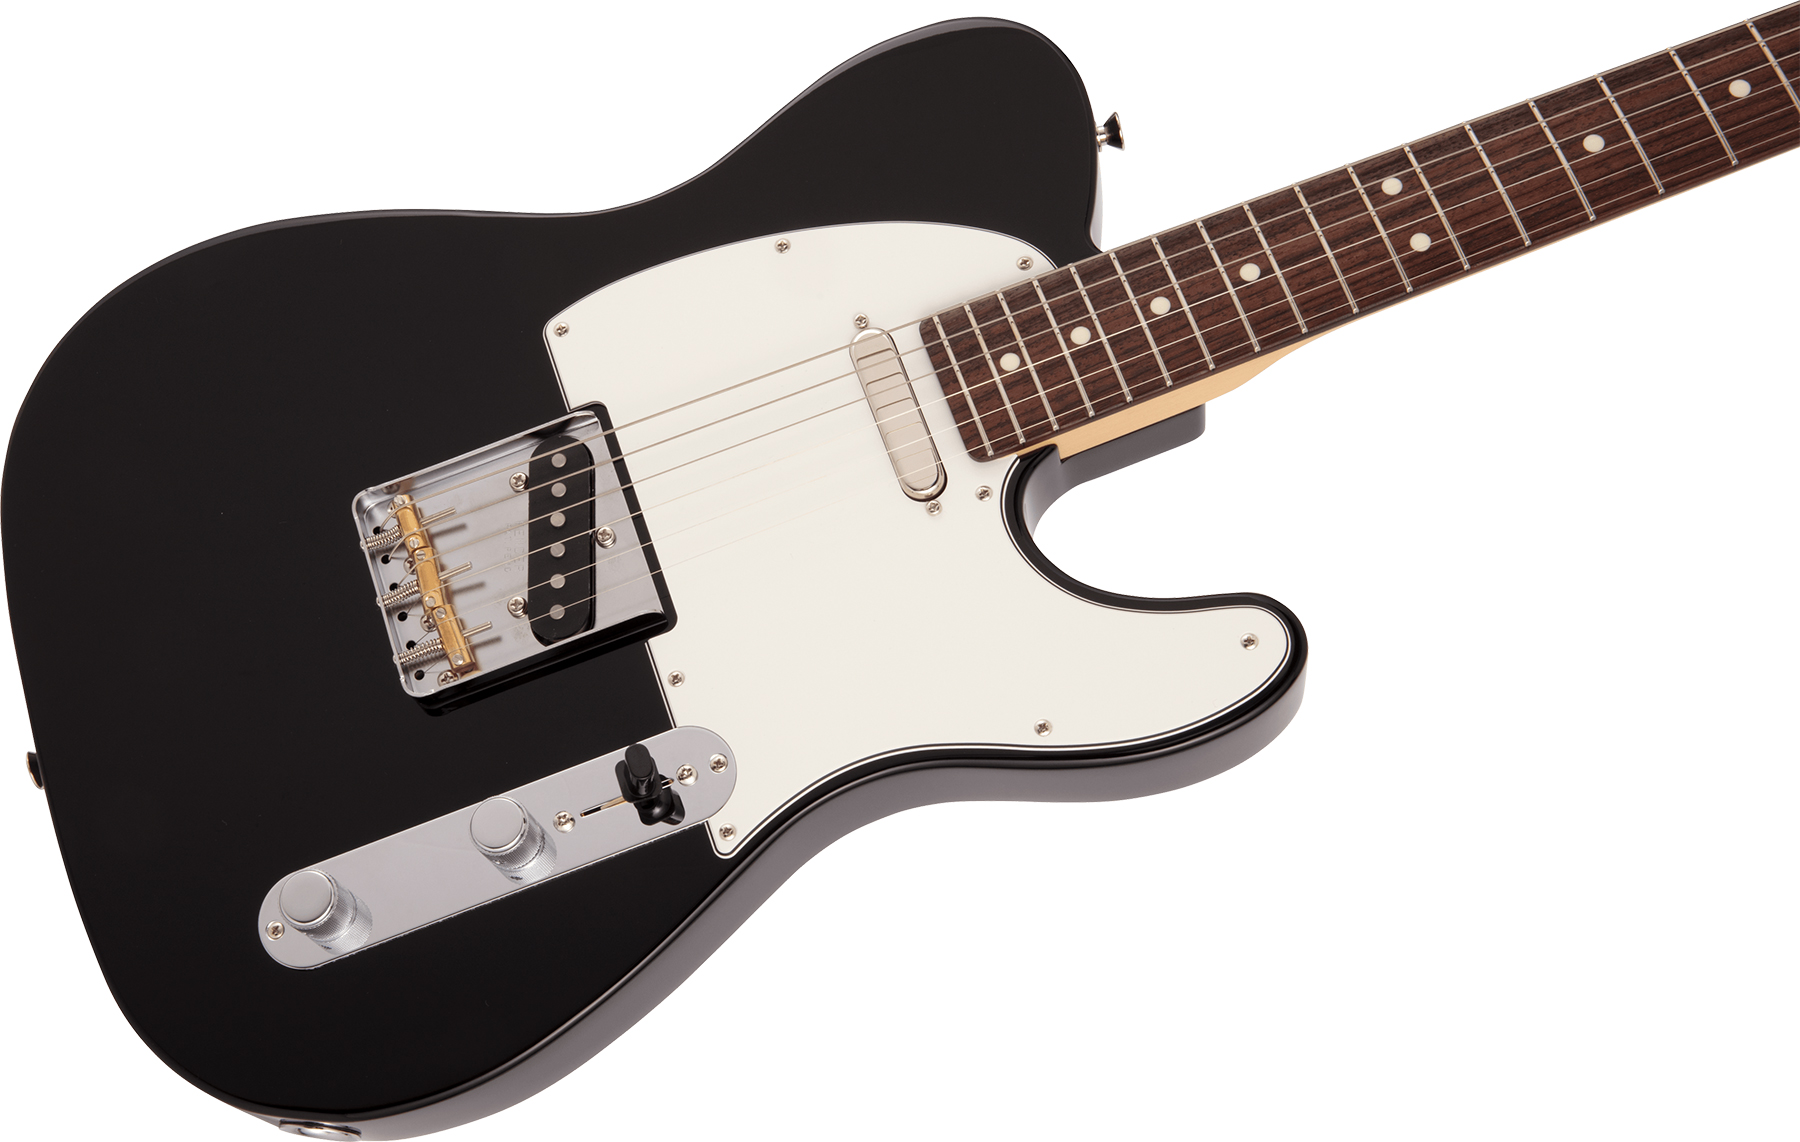 Fender Made in Japan Hybrid II Telecaster - black Tel shape